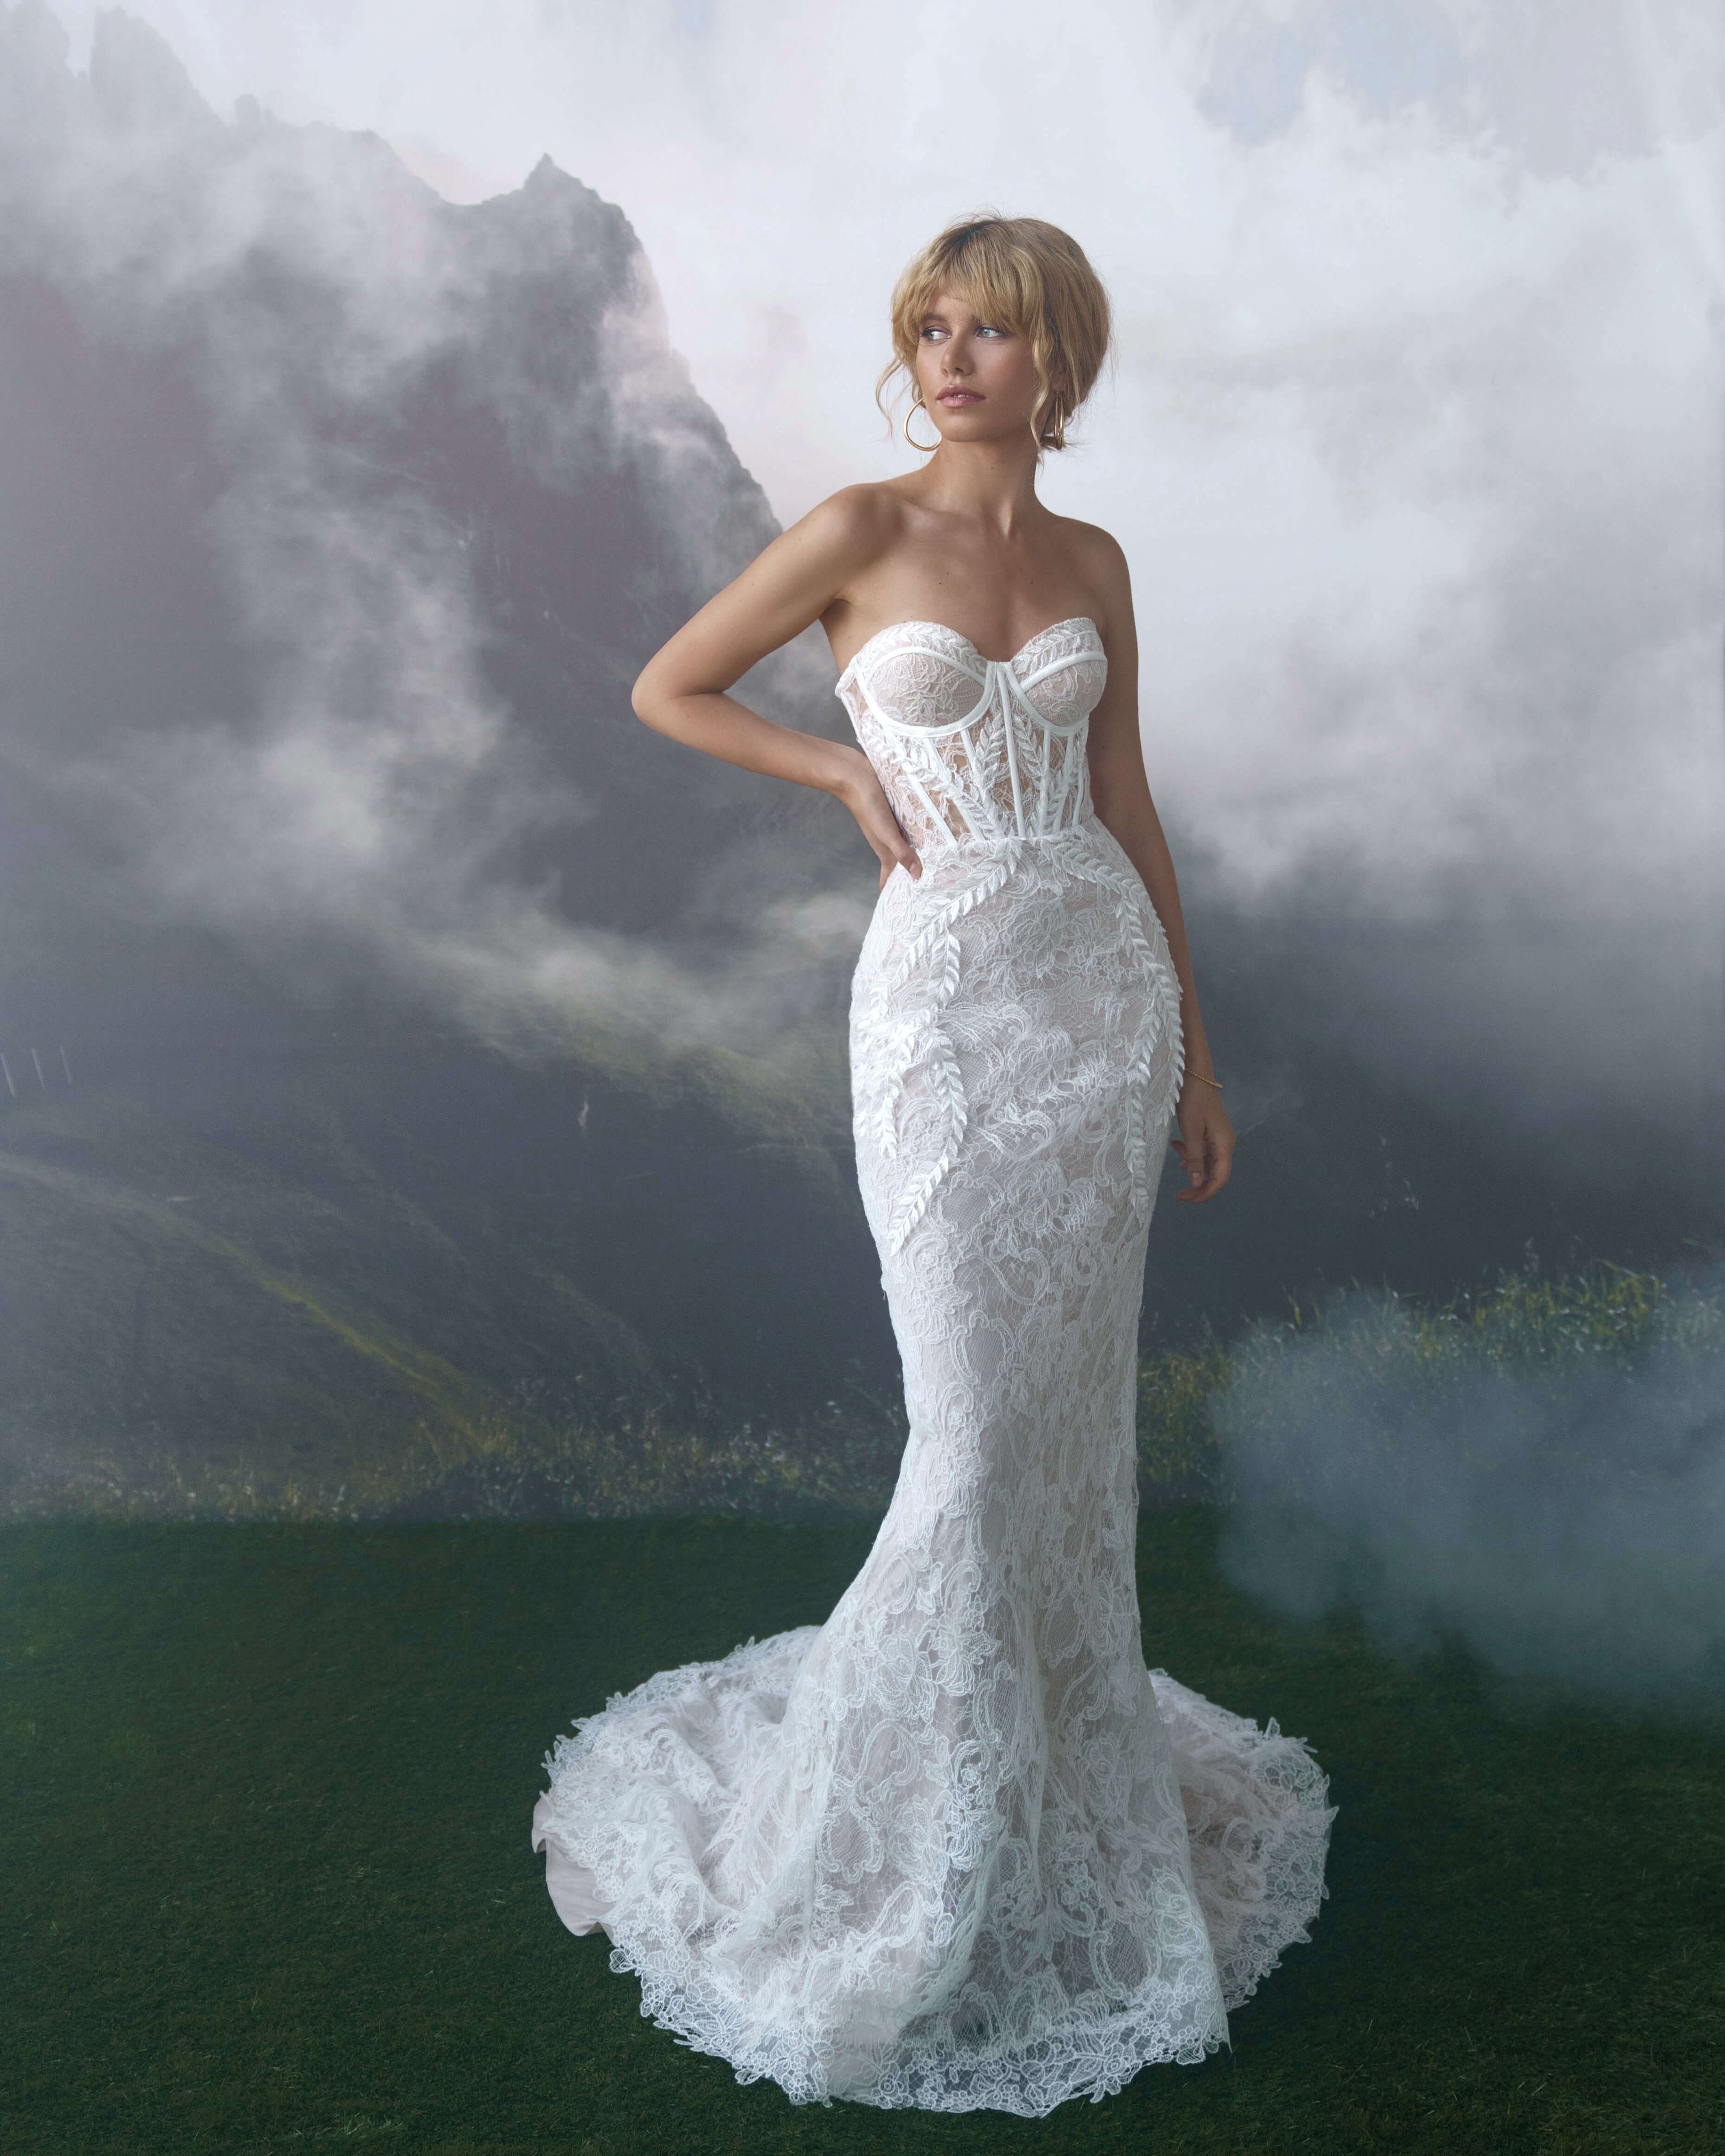 Купить свадебное платье «Юри» Бламмо Биамо из коллекции Сказка 2022 года в салоне «Мэри Трюфель»